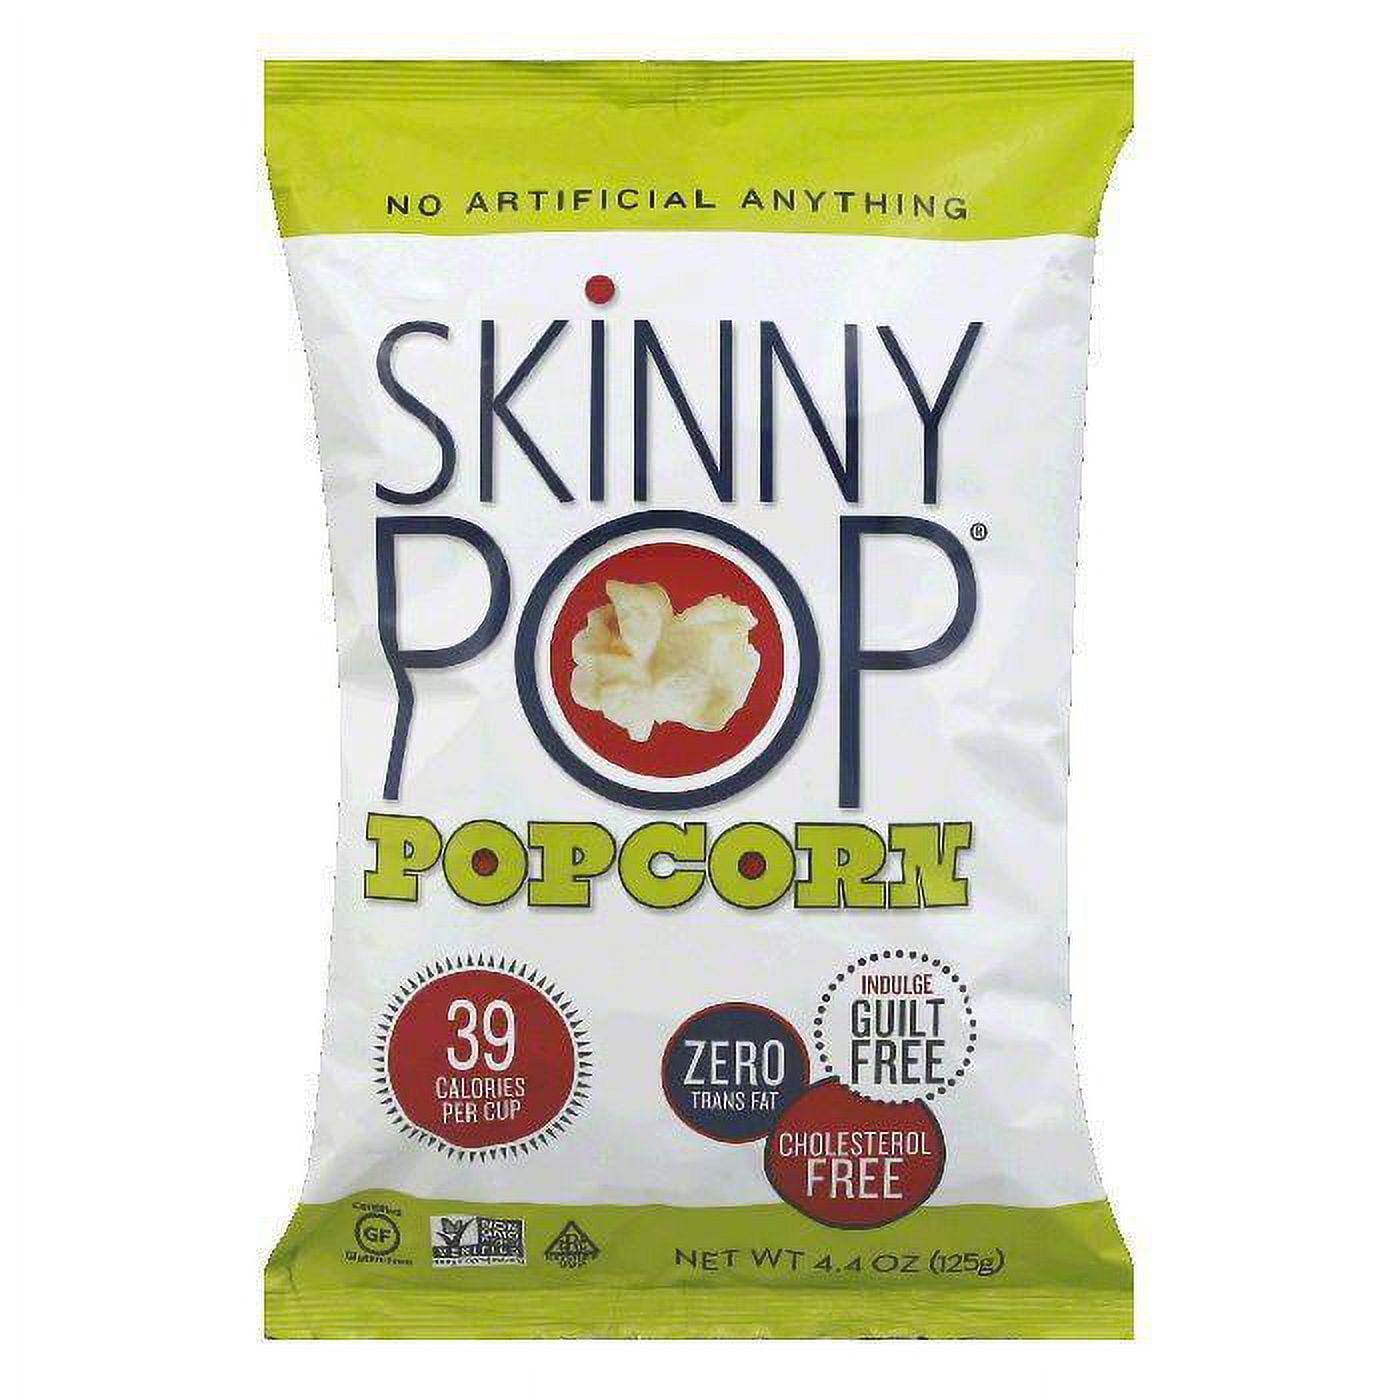 SkinnyPop Original Popcorn, 4.4oz Grocery Size Bags, Skinny Pop, Healthy  Popcorn